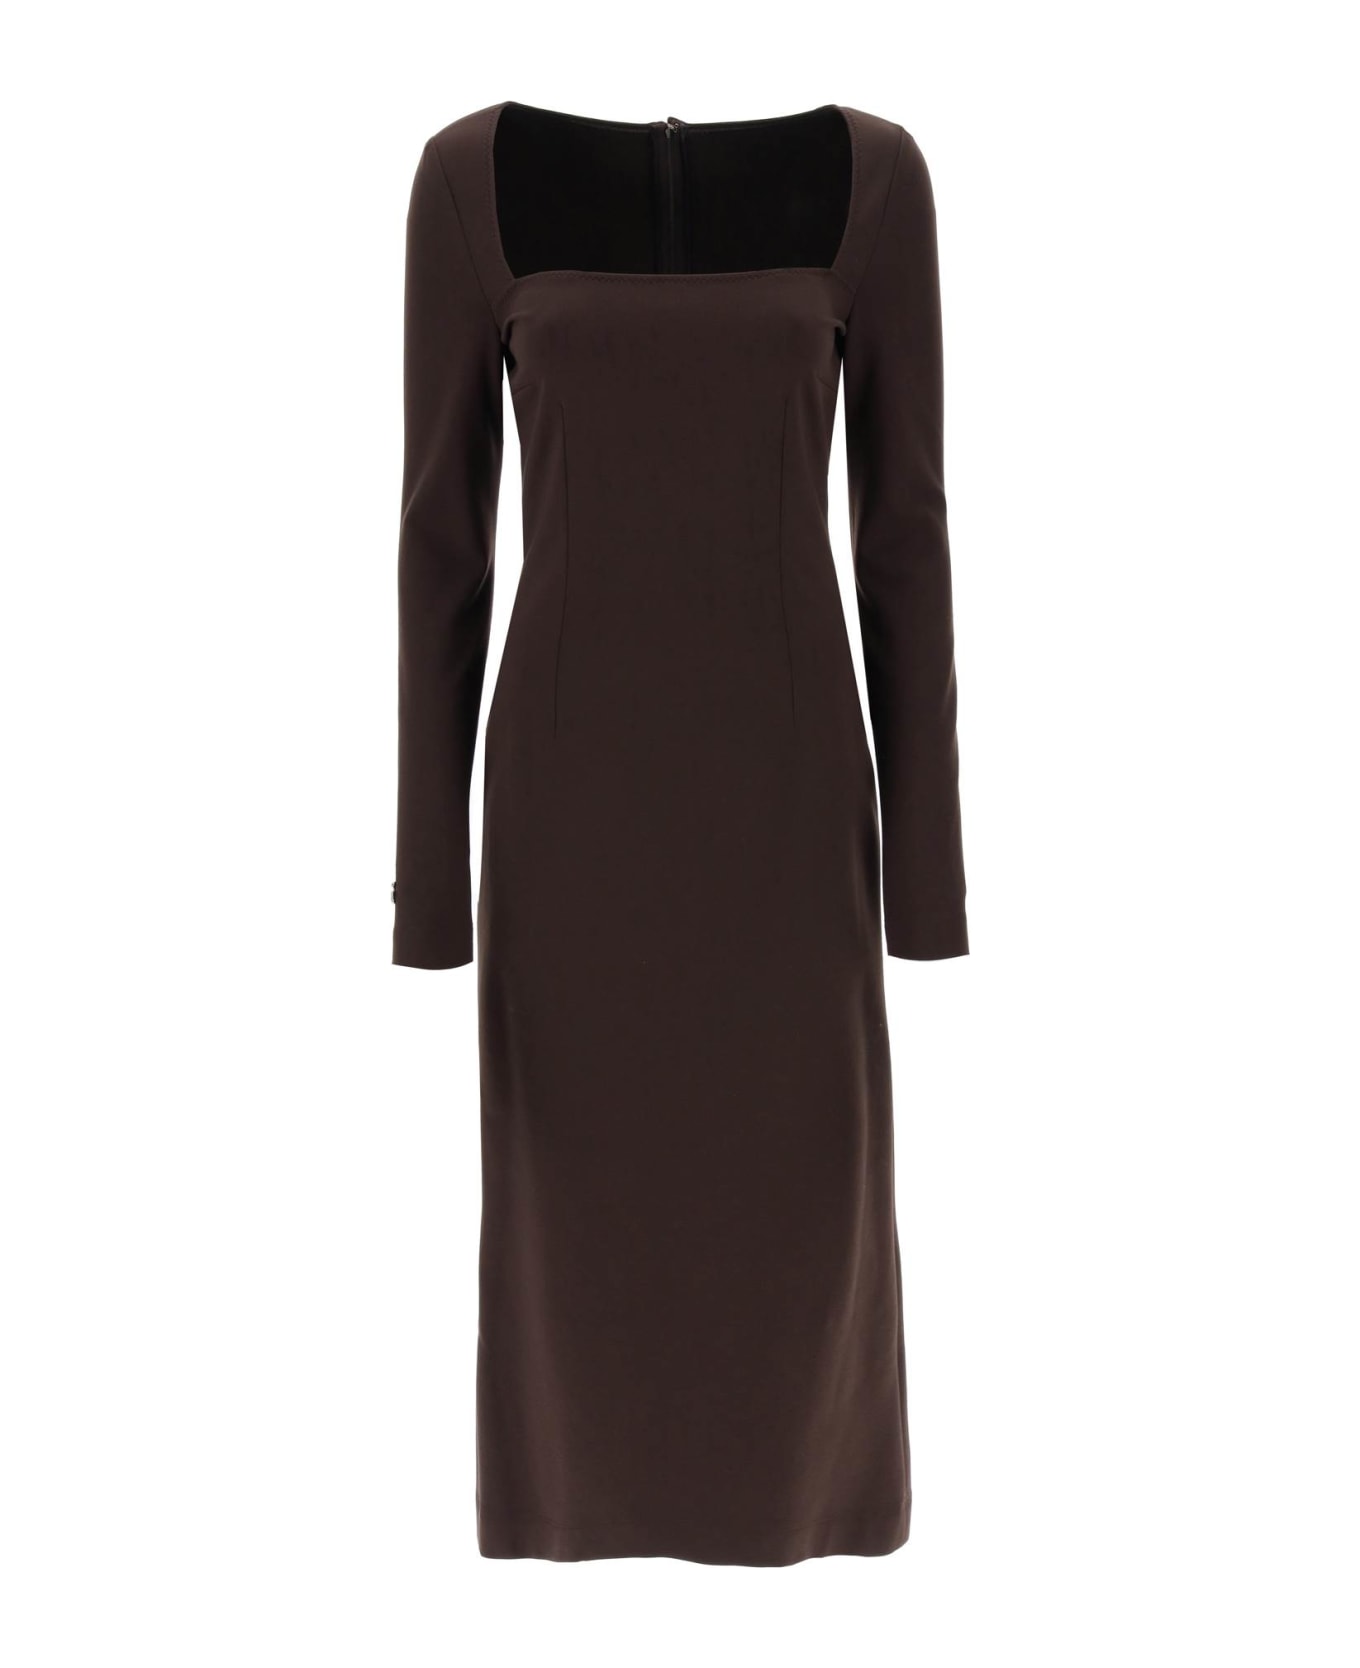 Dolce & Gabbana Jersey Sheath Dress - Brown